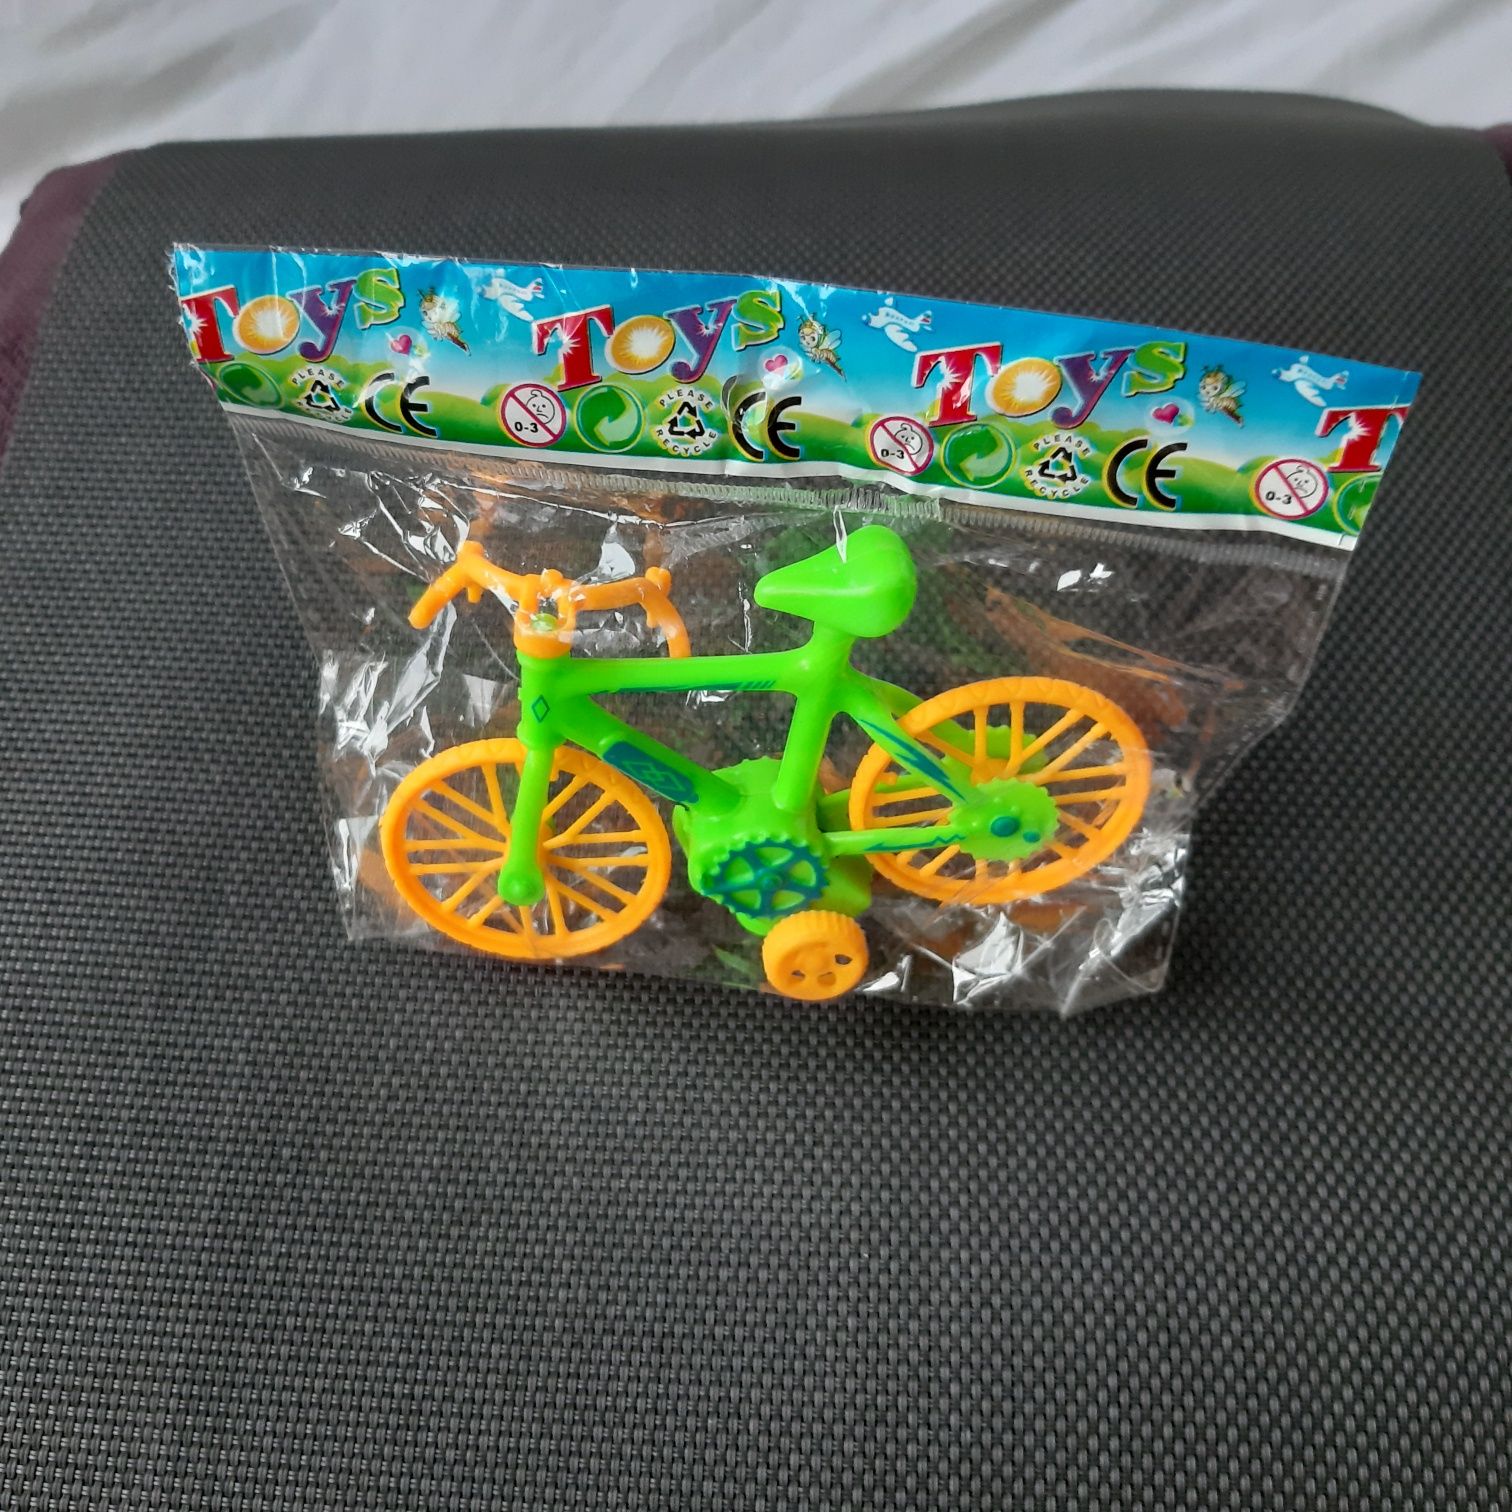 Rowerek nowy w folii zabawka figurka sprawny zielony żółty